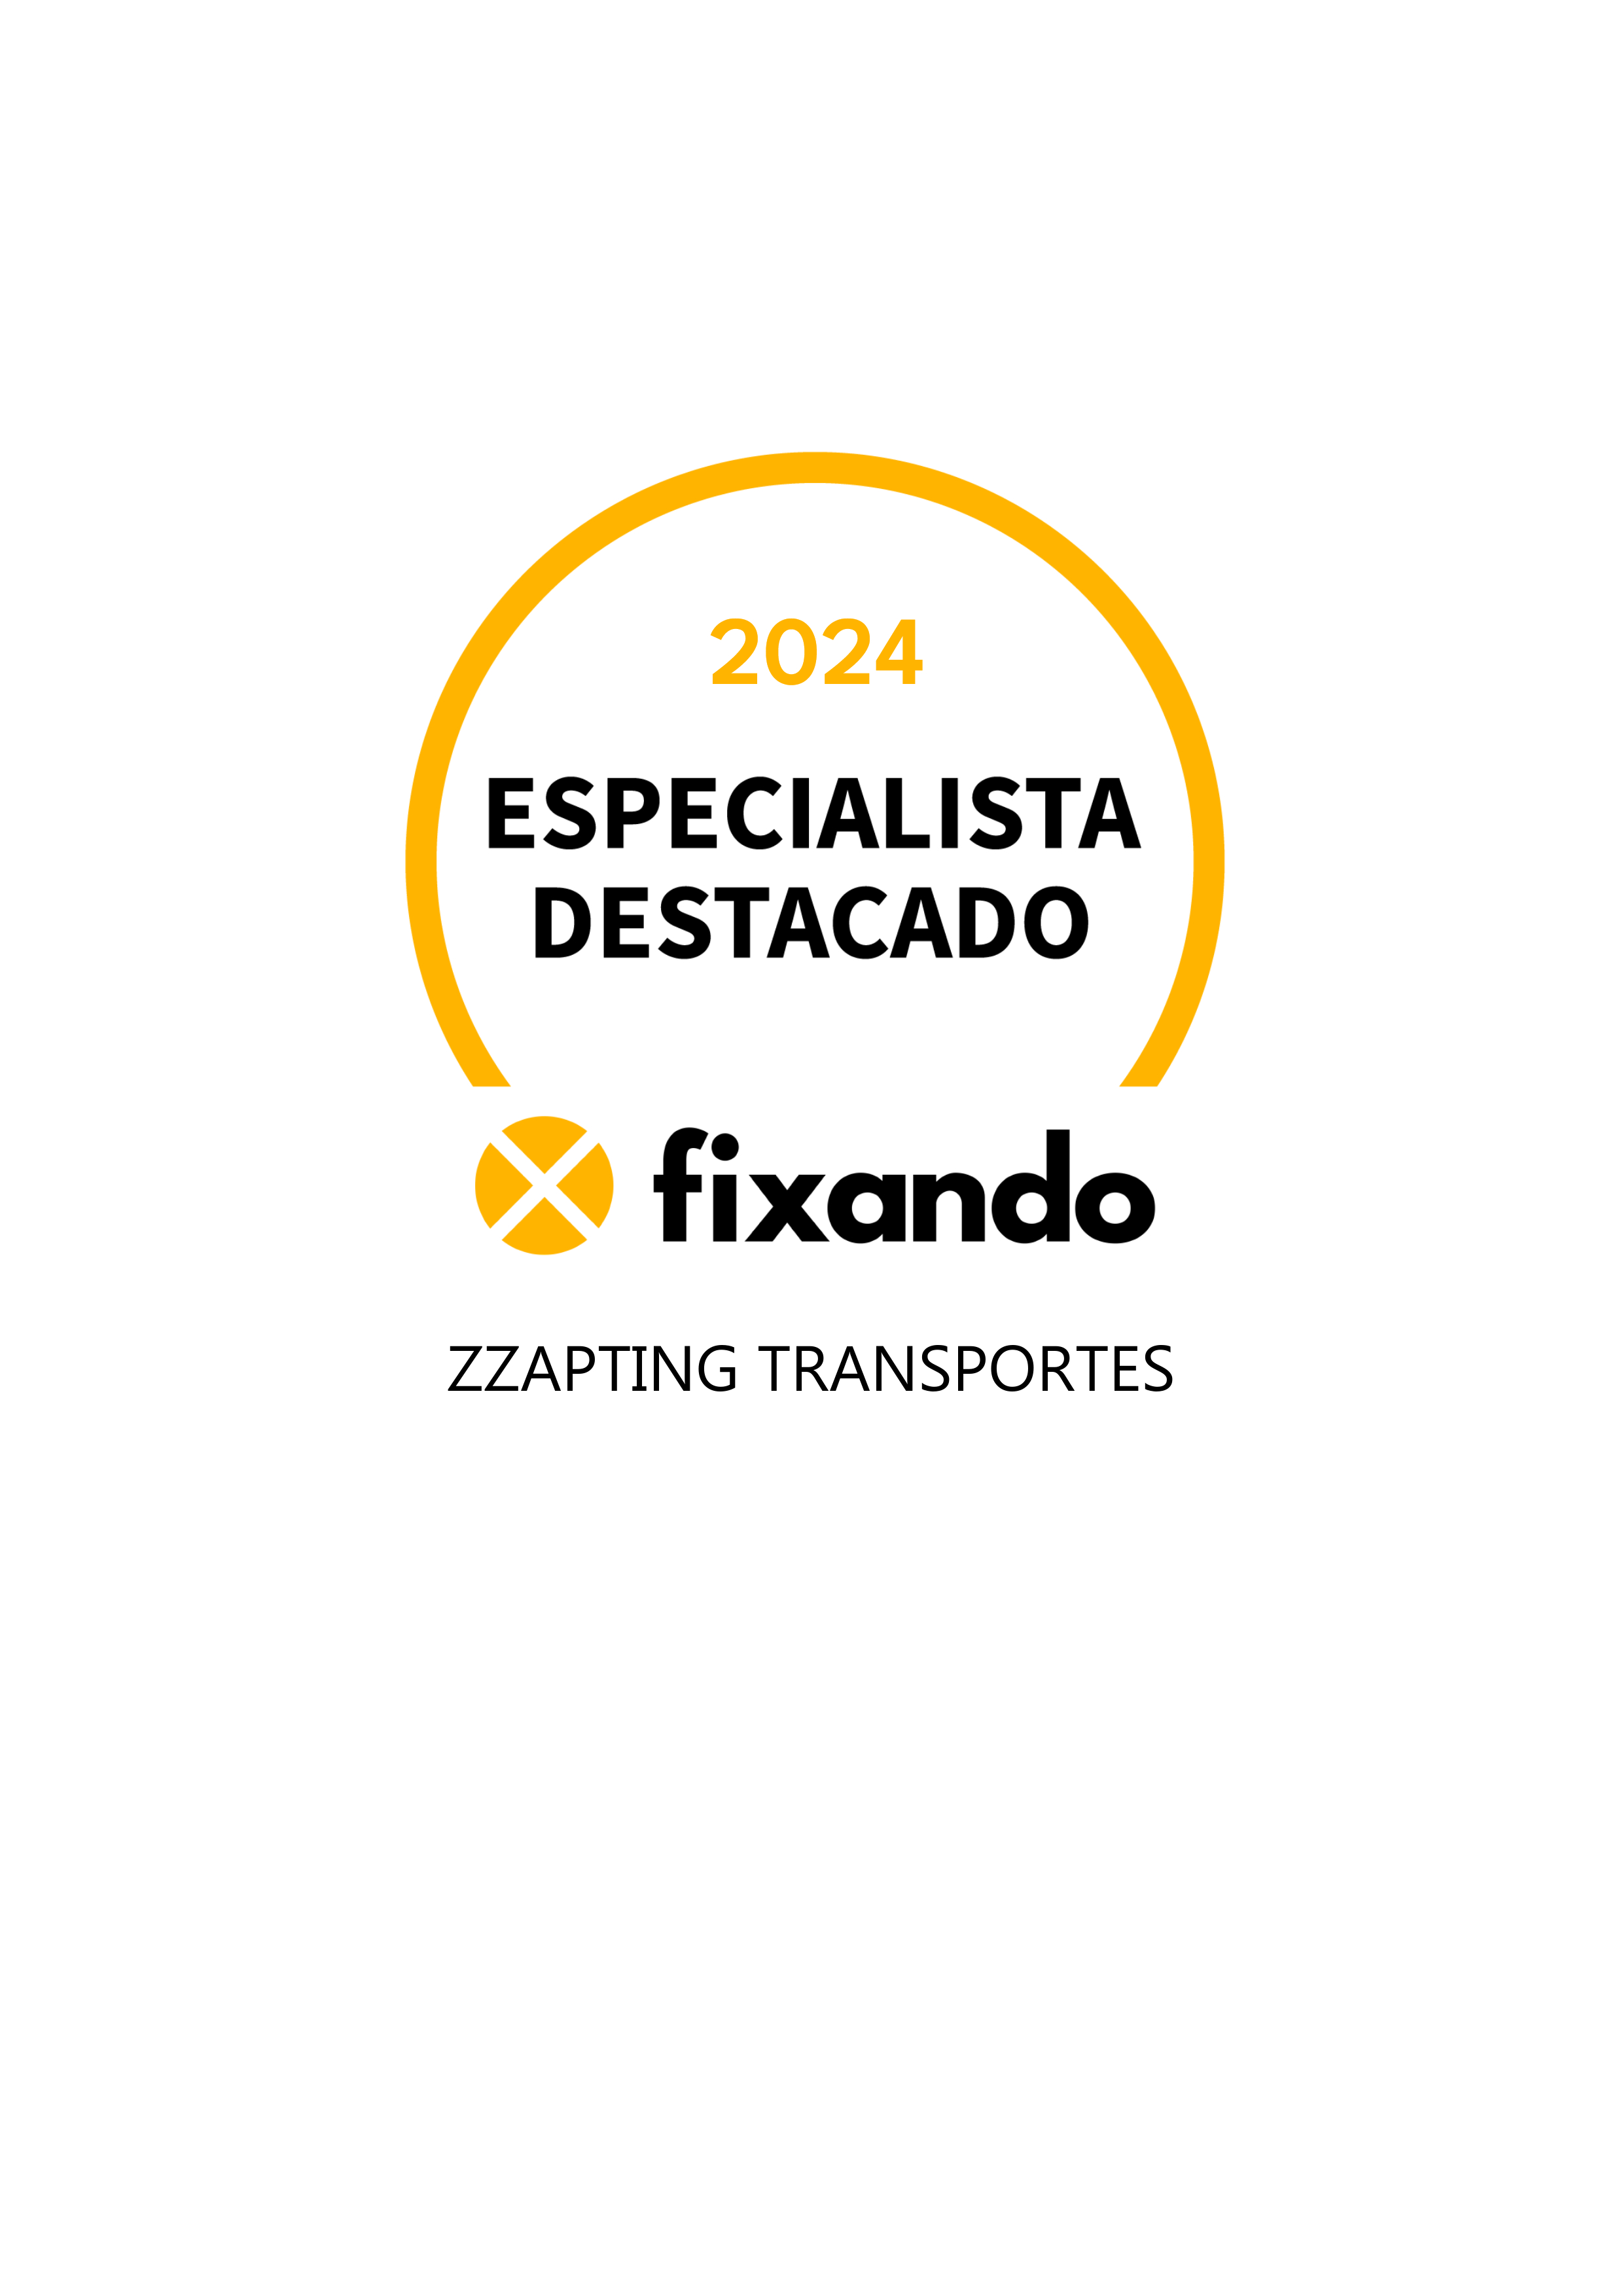 Zzapting Transportes - Lisboa - Instalação de Pavimento em Pedra ou Ladrilho